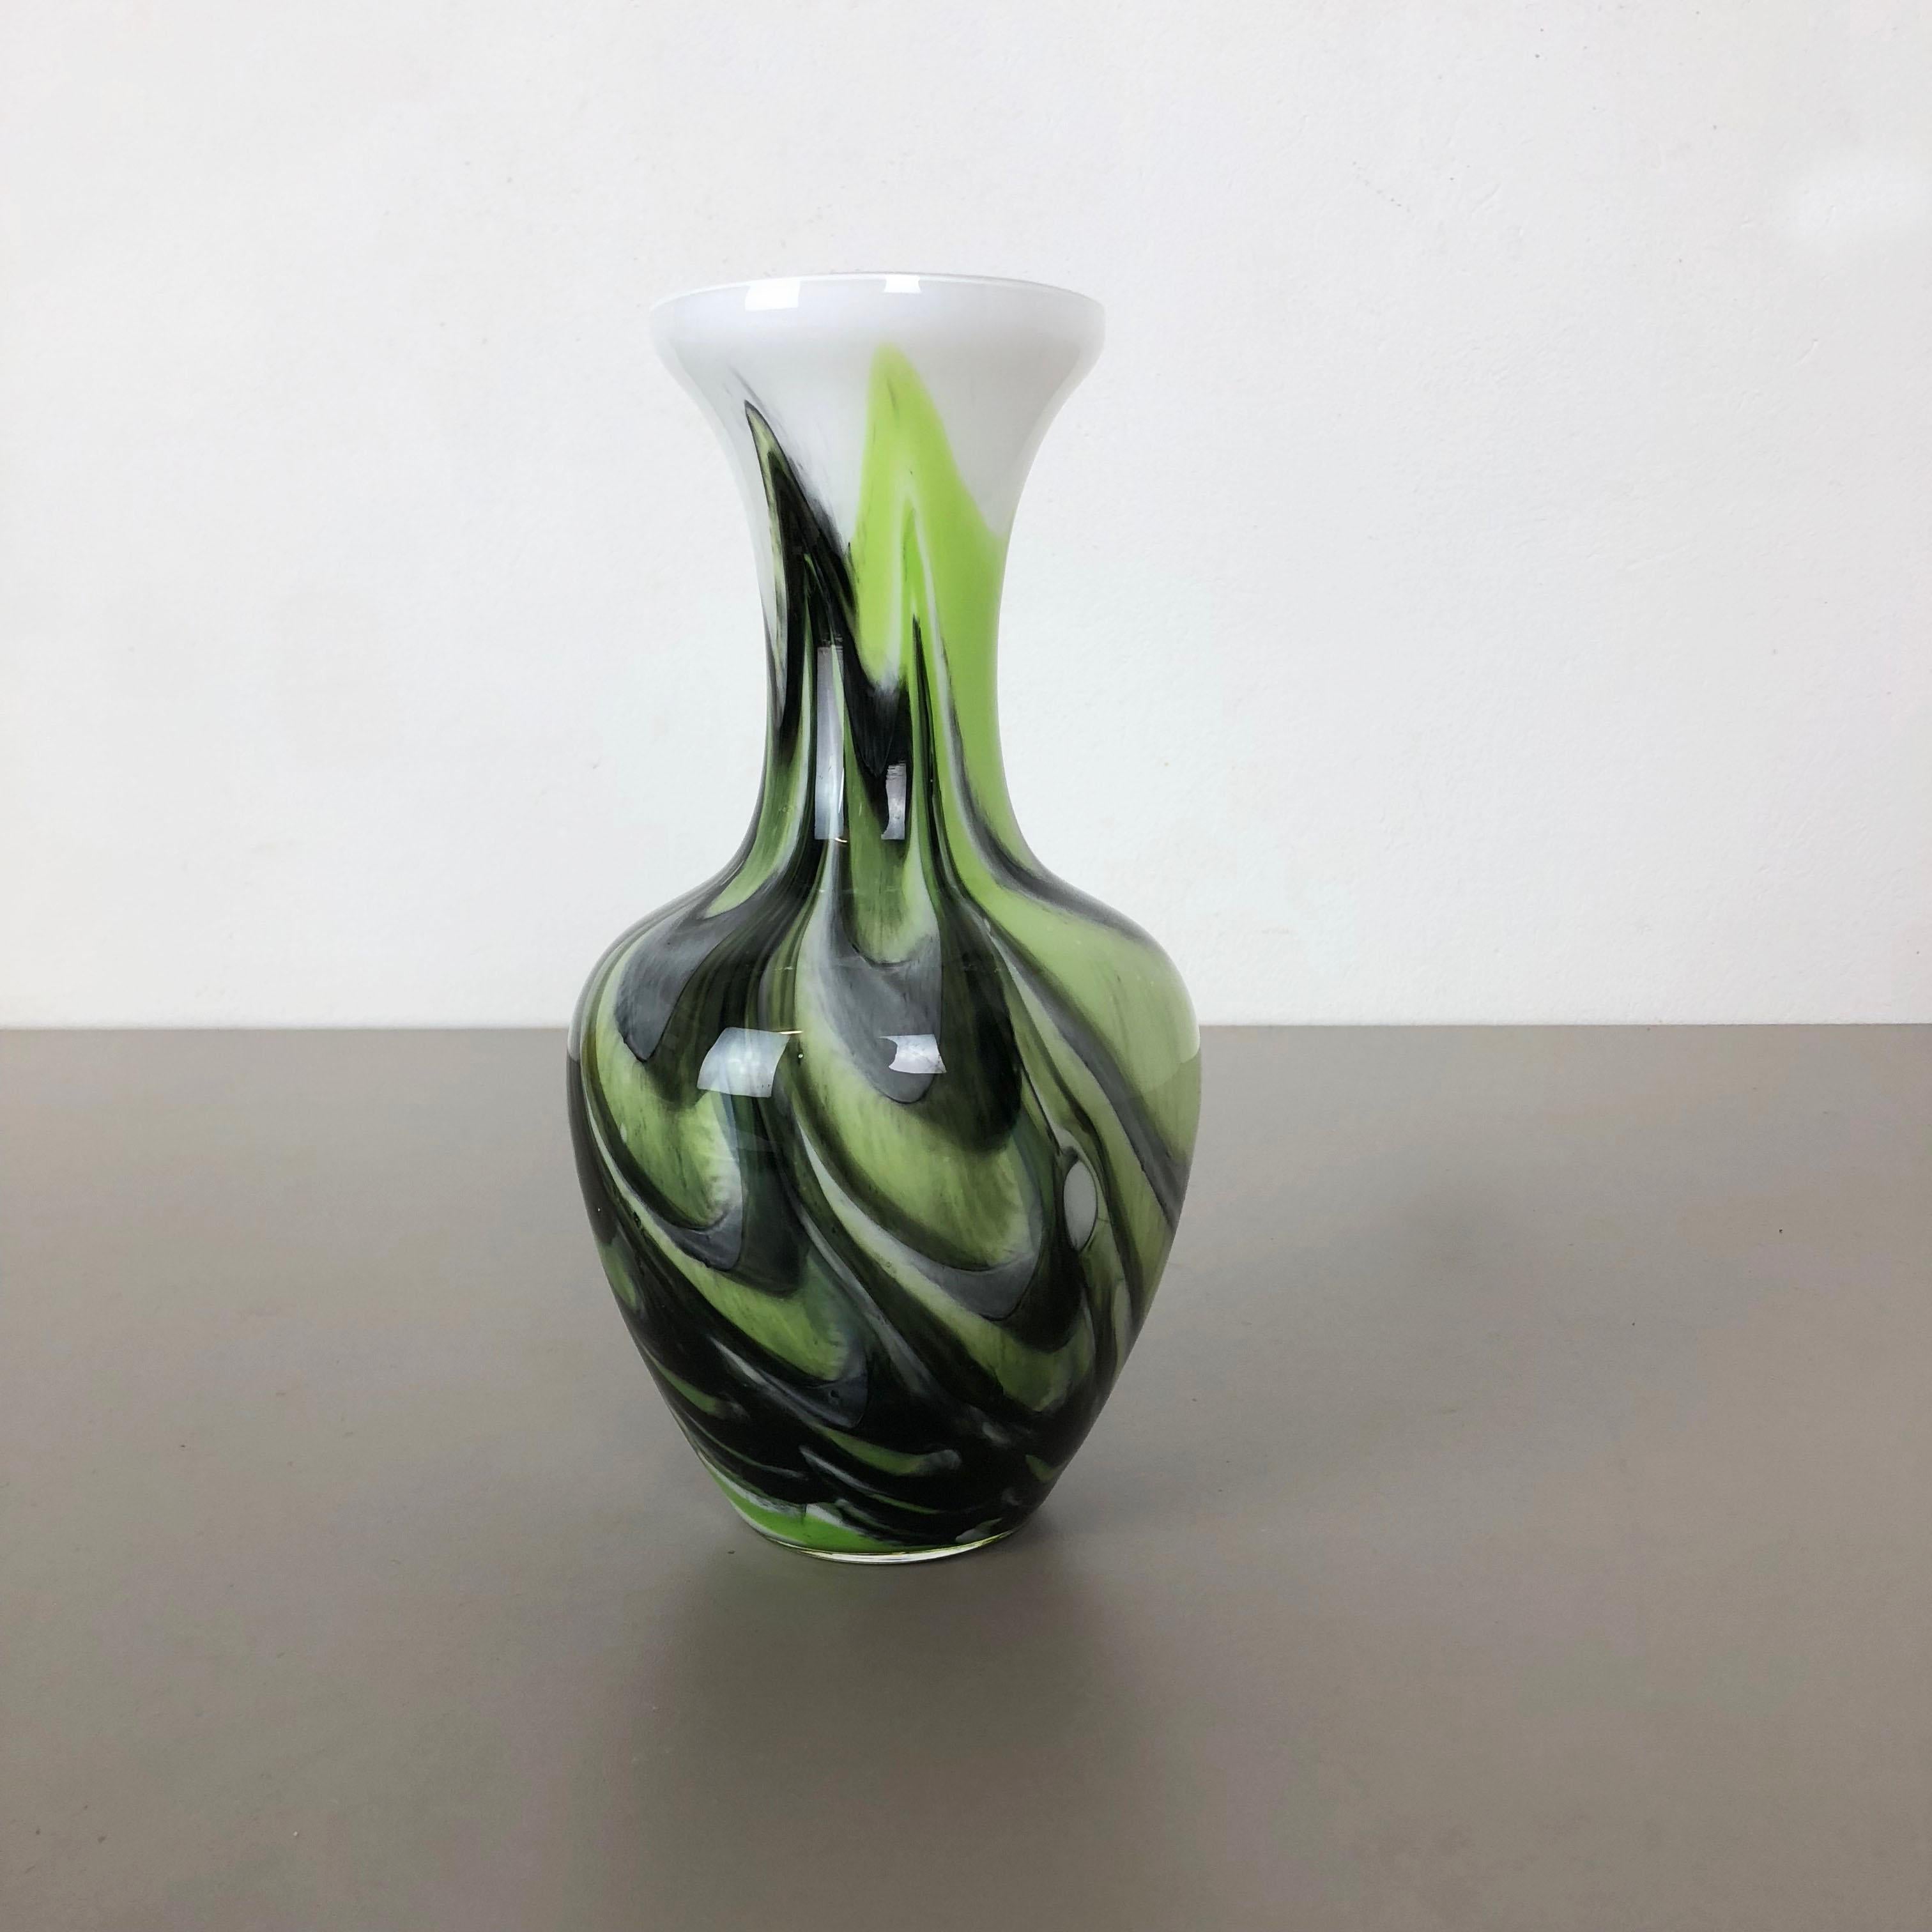 Artikel:

Pop-Art-Vase


Produzent:

Opalin Florenz


Jahrzehnt:

1970er




Originale mundgeblasene Pop-Art-Vase aus den 1970er Jahren, hergestellt in Italien von Opaline Florenz. Hergestellt aus hochwertigem italienischem